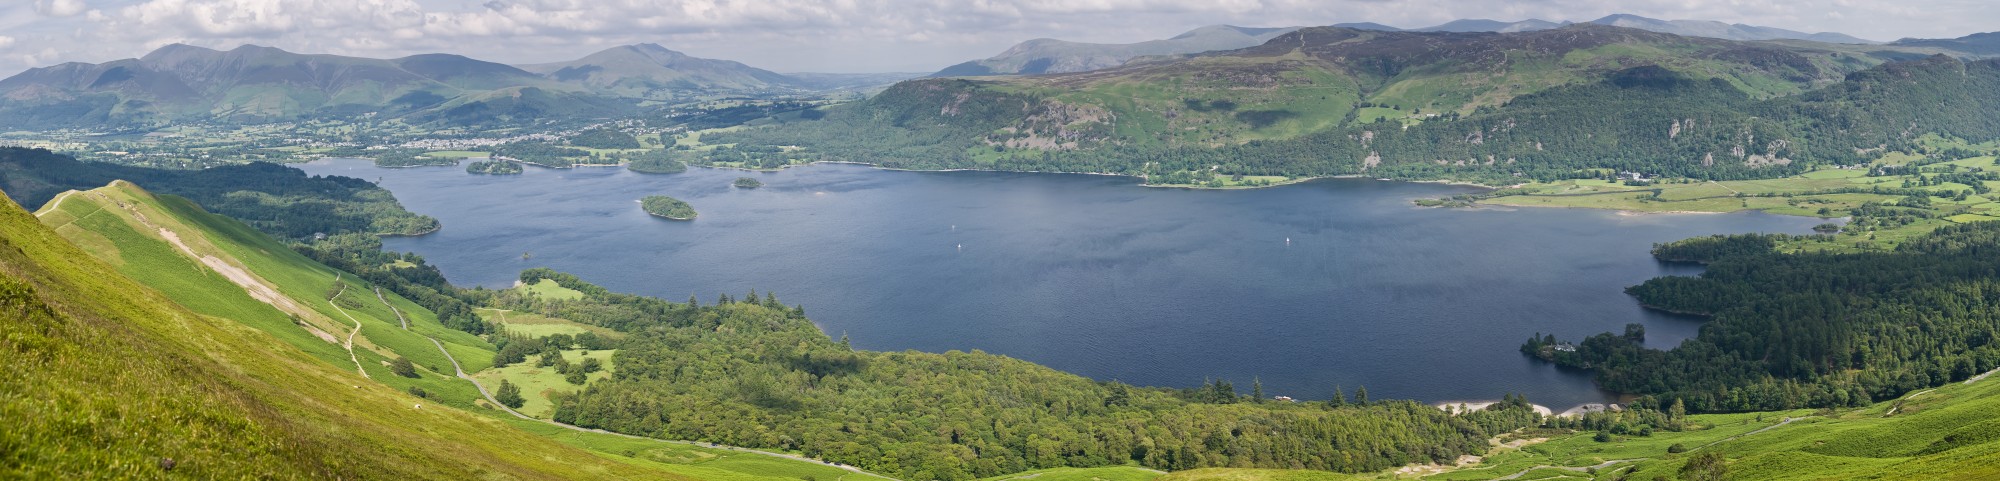 Derwent Water Panorama, Lake District - June 2009